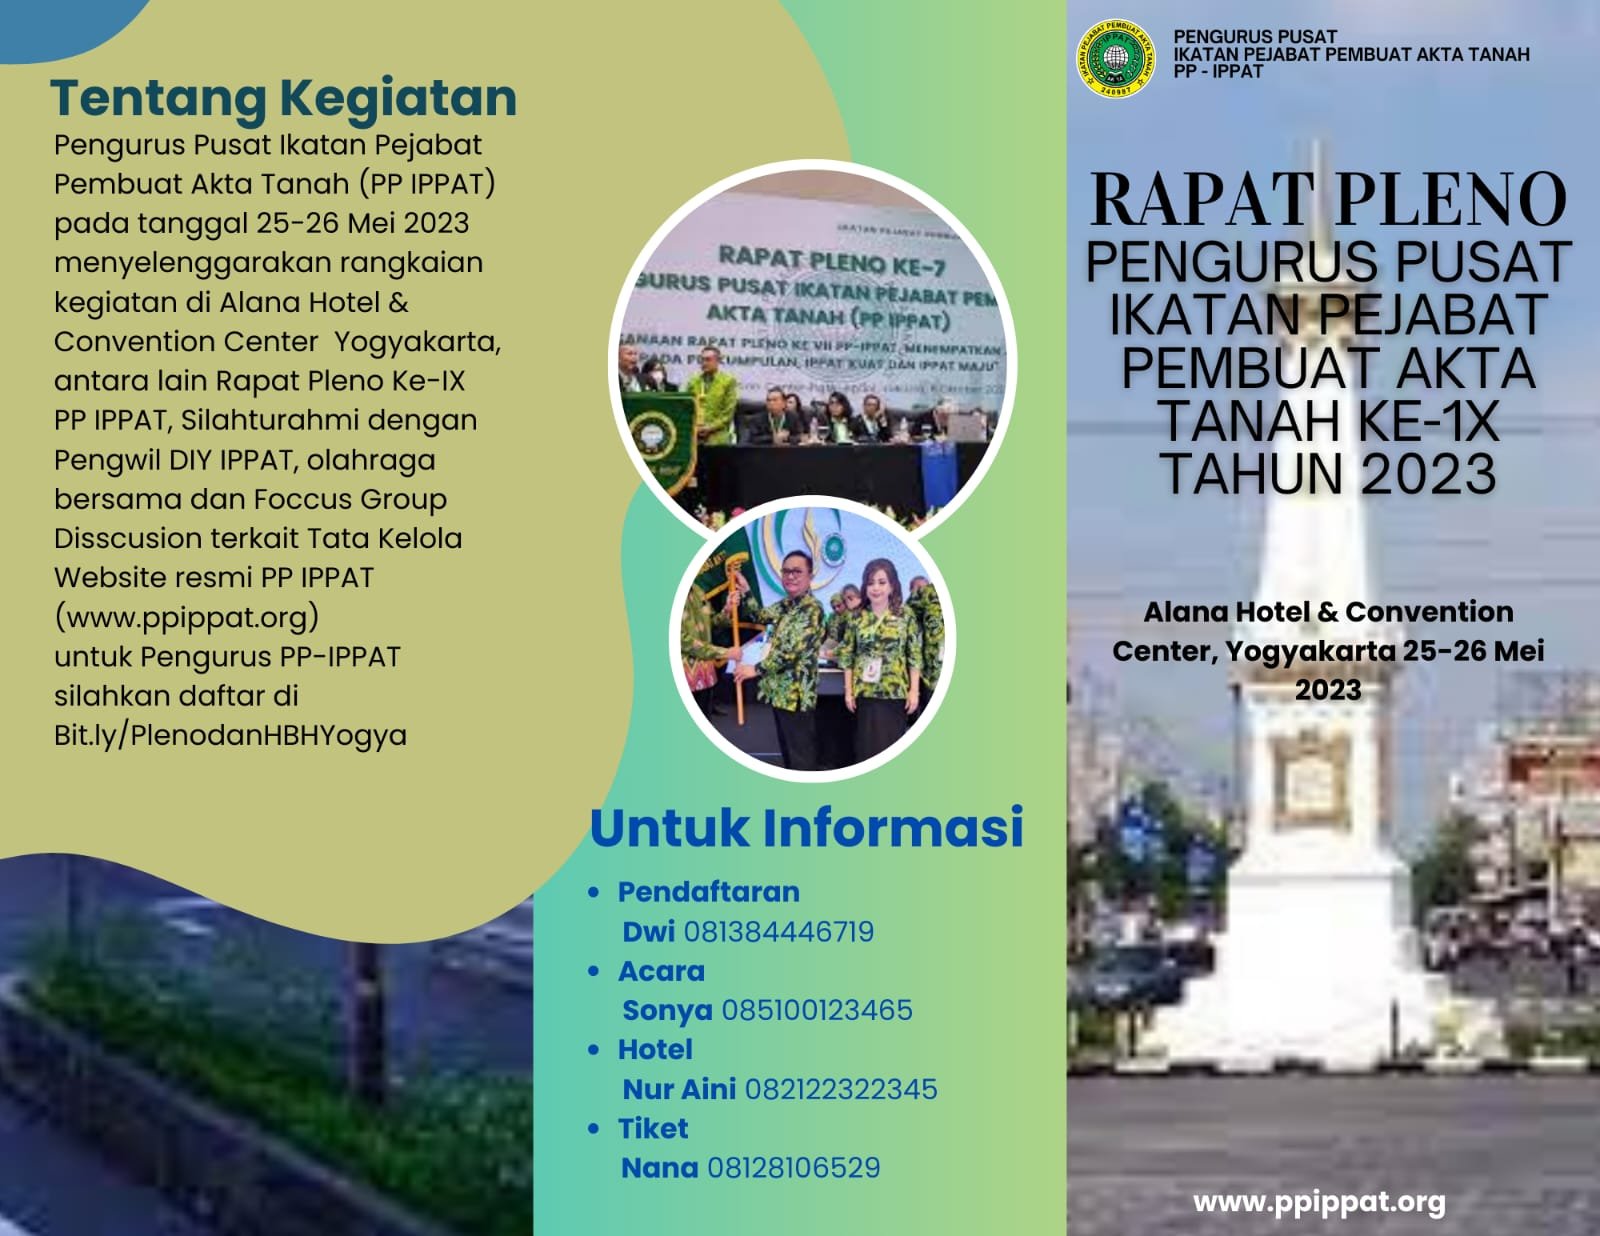 Rapat Pleno PP IPPAT ke 9 dan Silahturahmi IPPAT di Yogyakarta